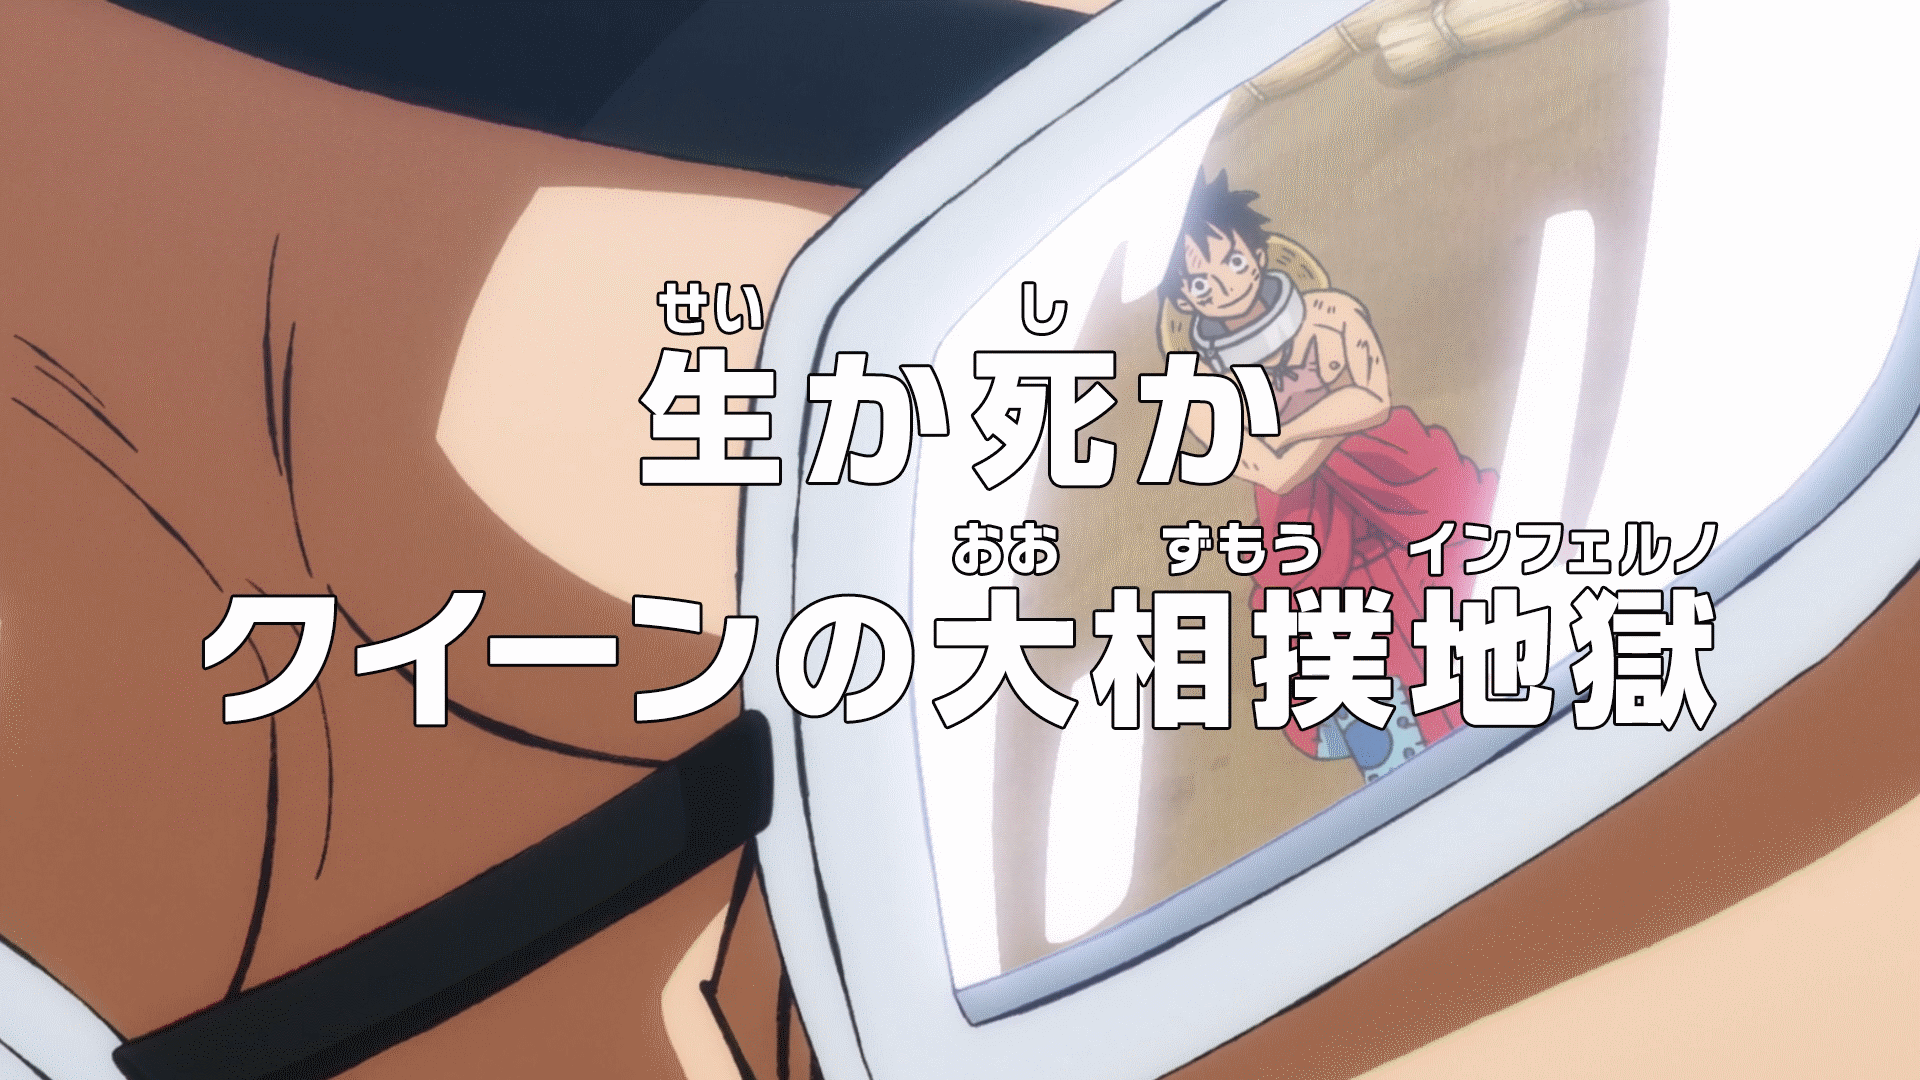 One Piece/Episode 128 - Anime Bath Scene Wiki